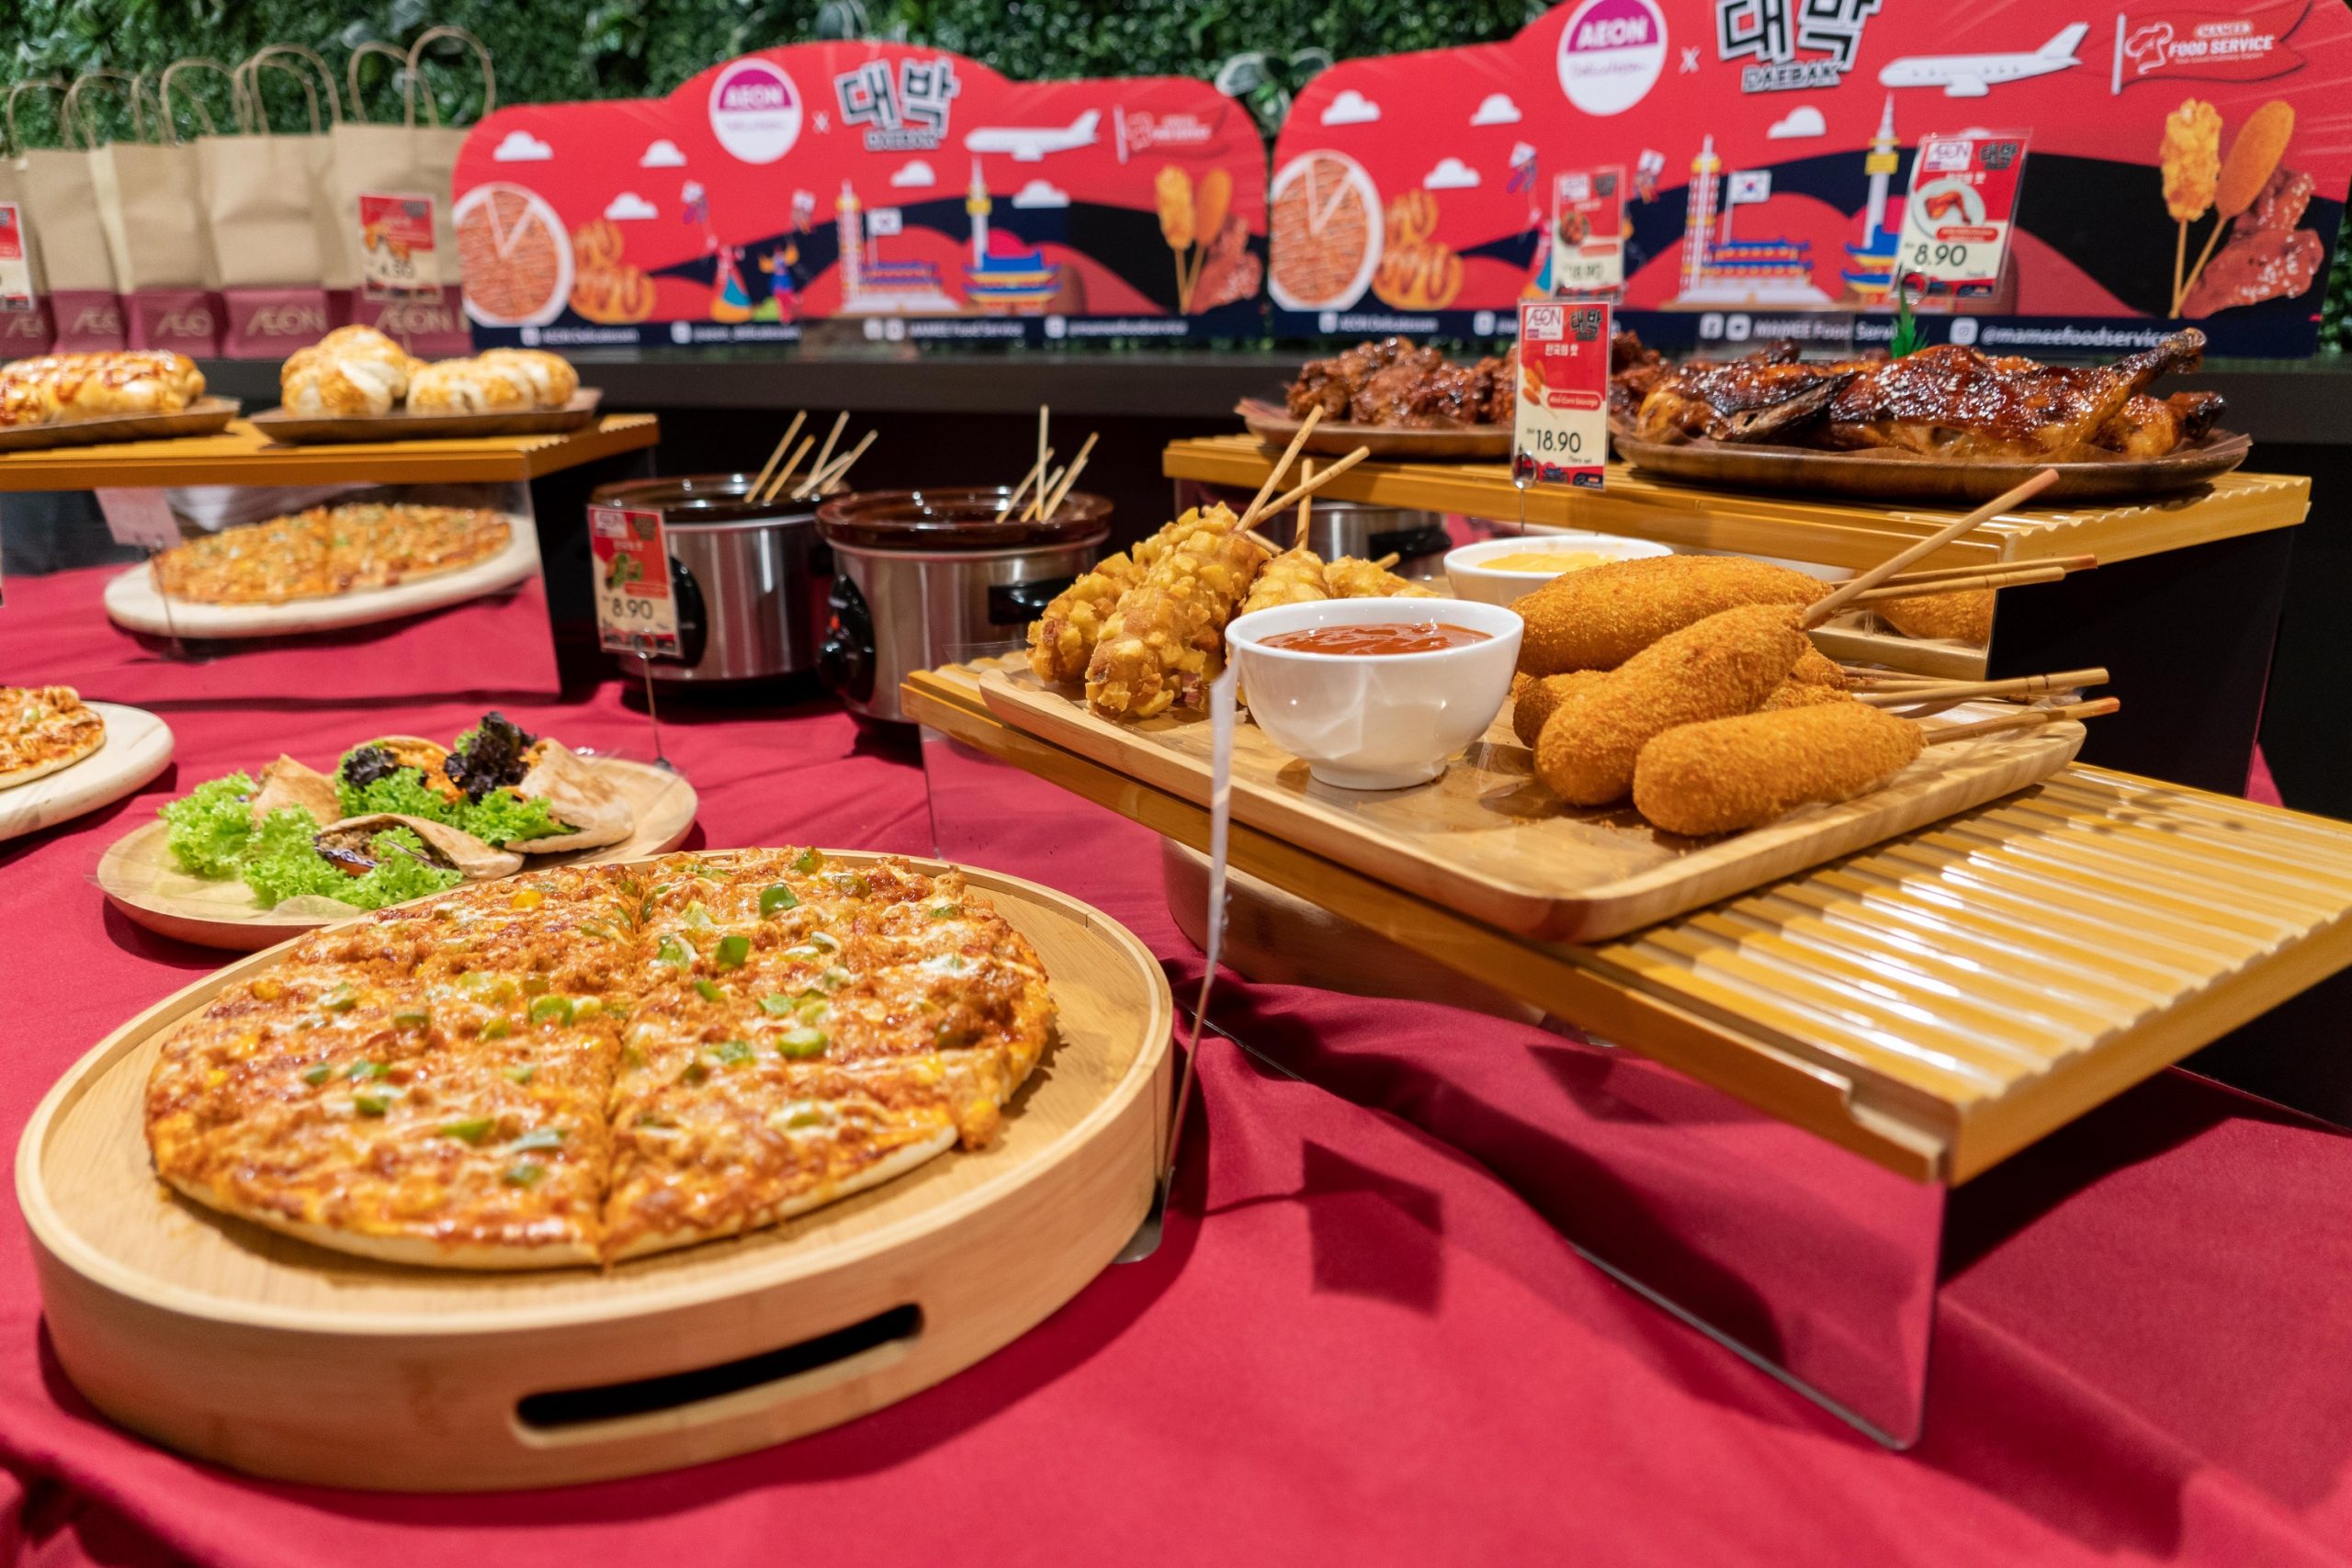 AEON x DAEBAK – Ready to Eat Halal Korean Street Food across all AEON Outlet in Malaysia